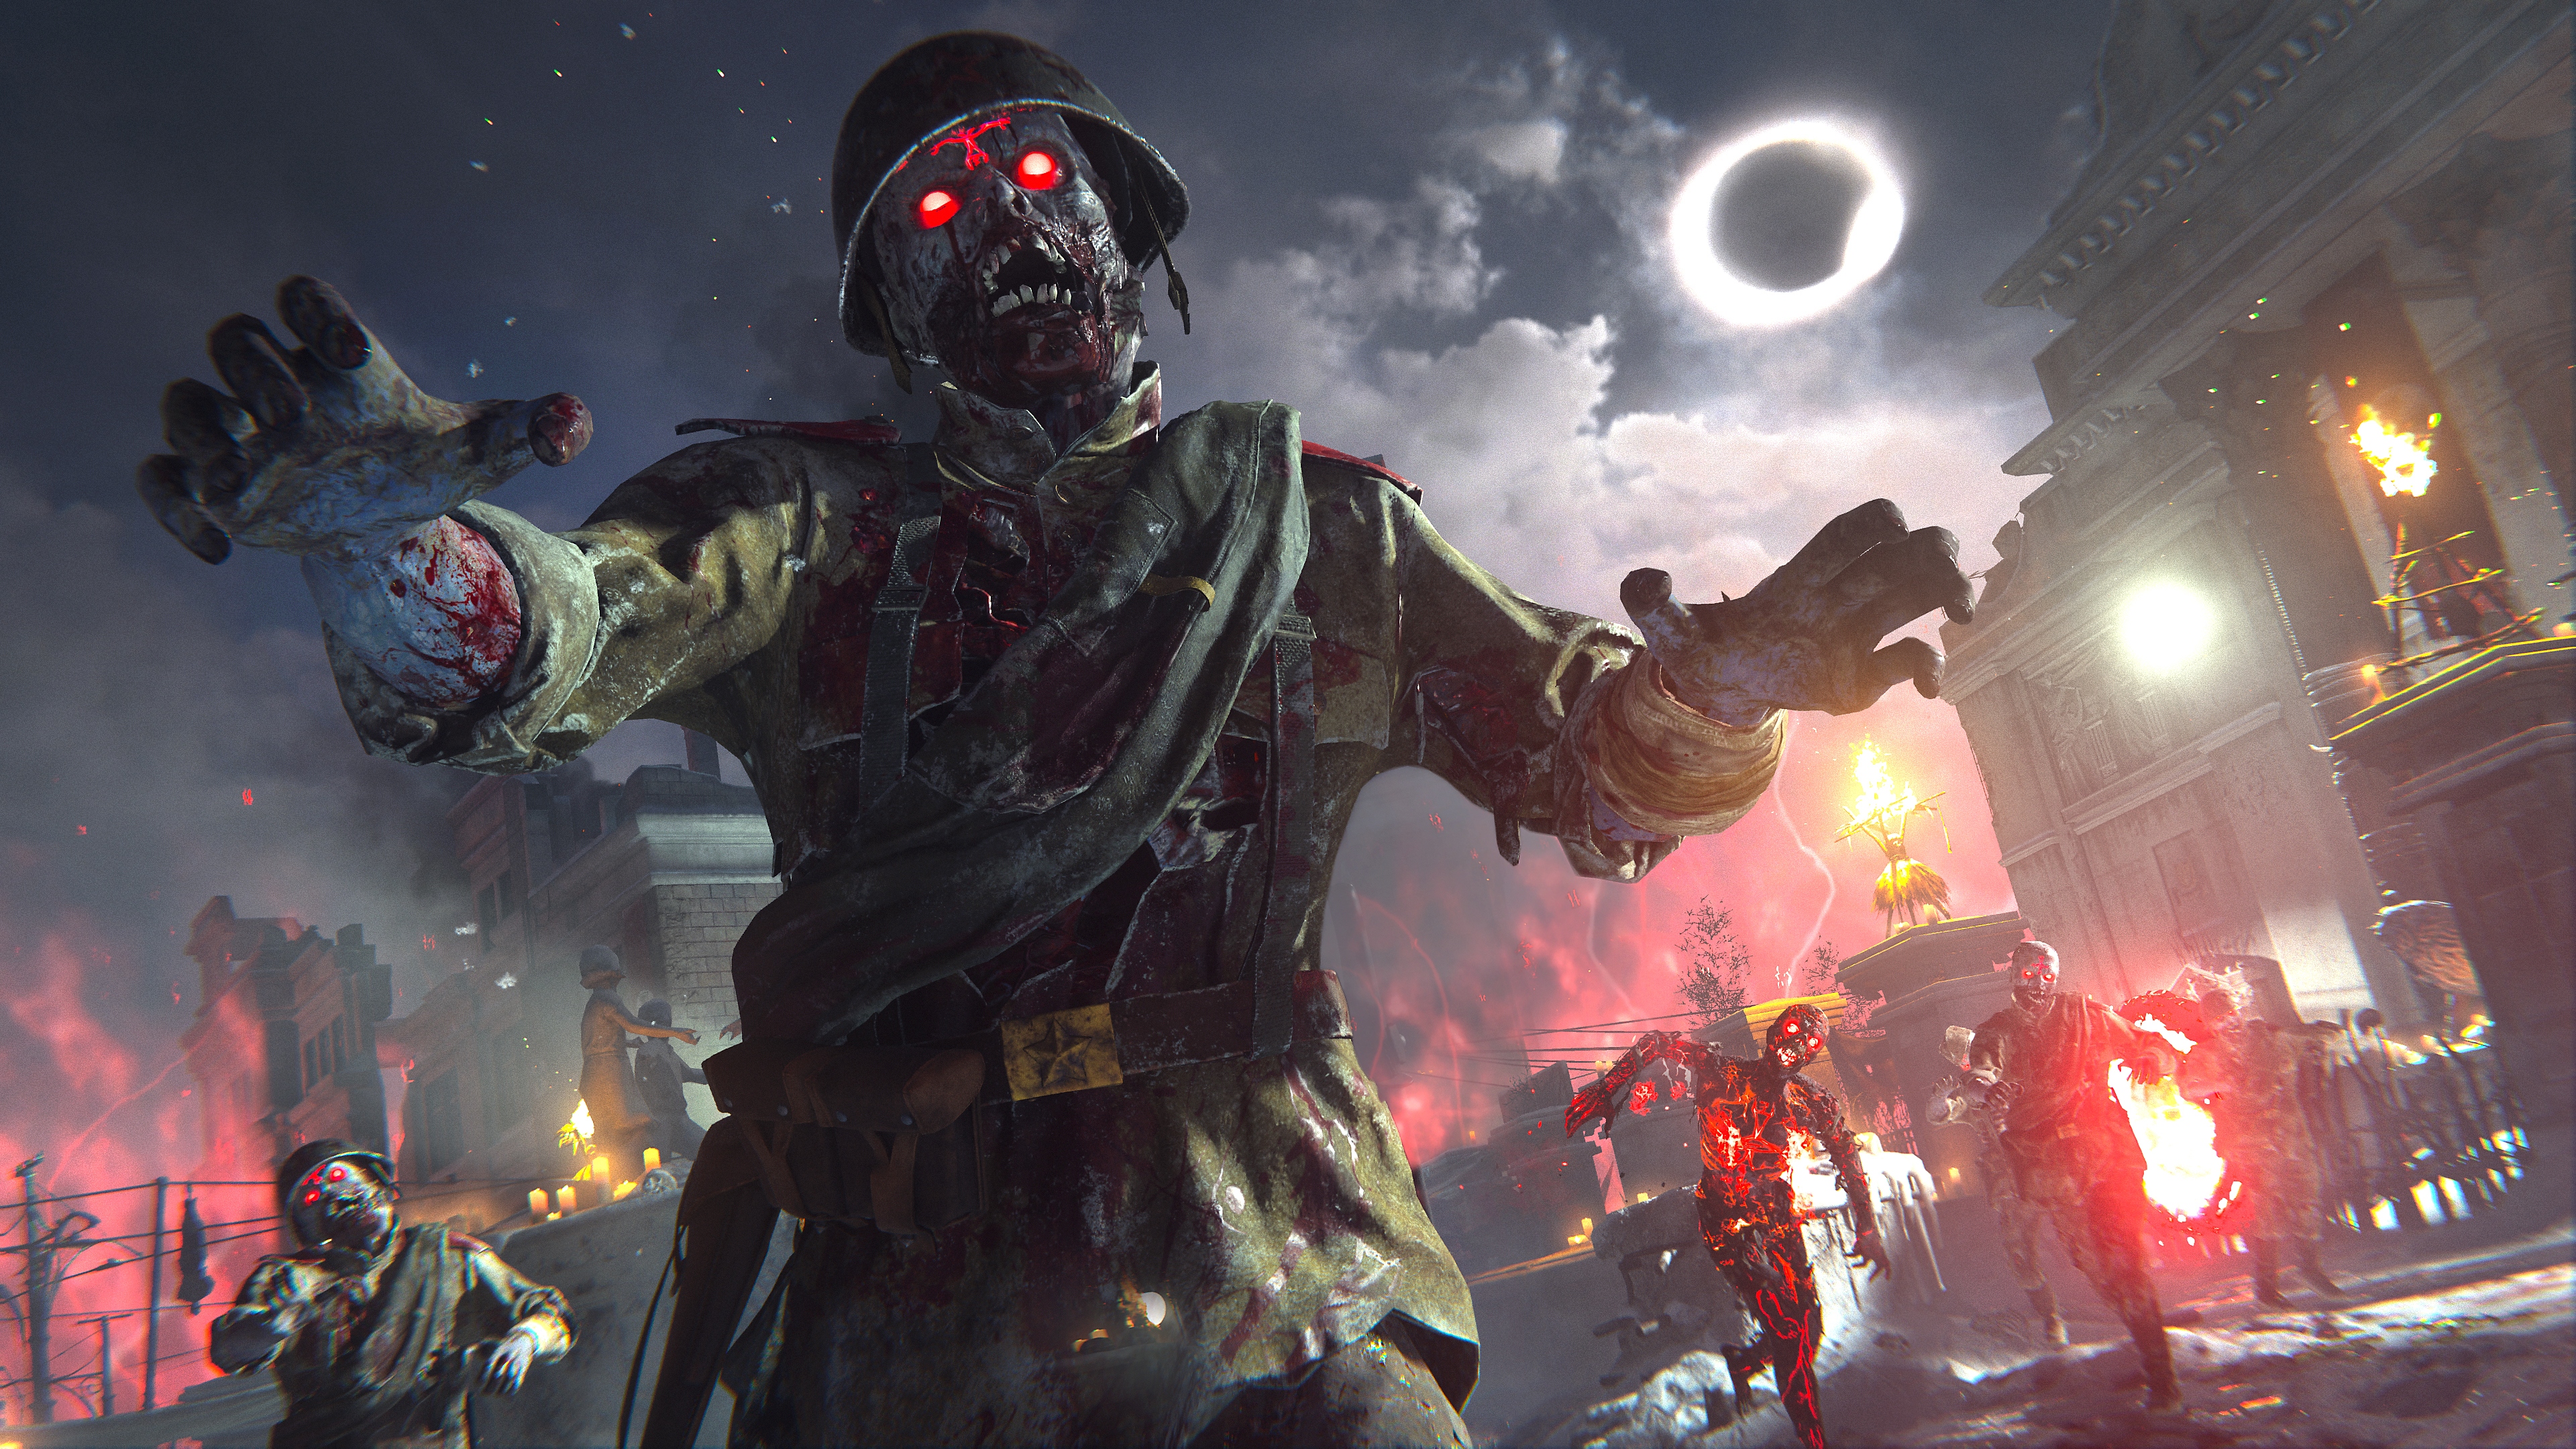 Call of Duty Vanguard – снимок экрана, на котором изображен зомби с горящими красными глазами